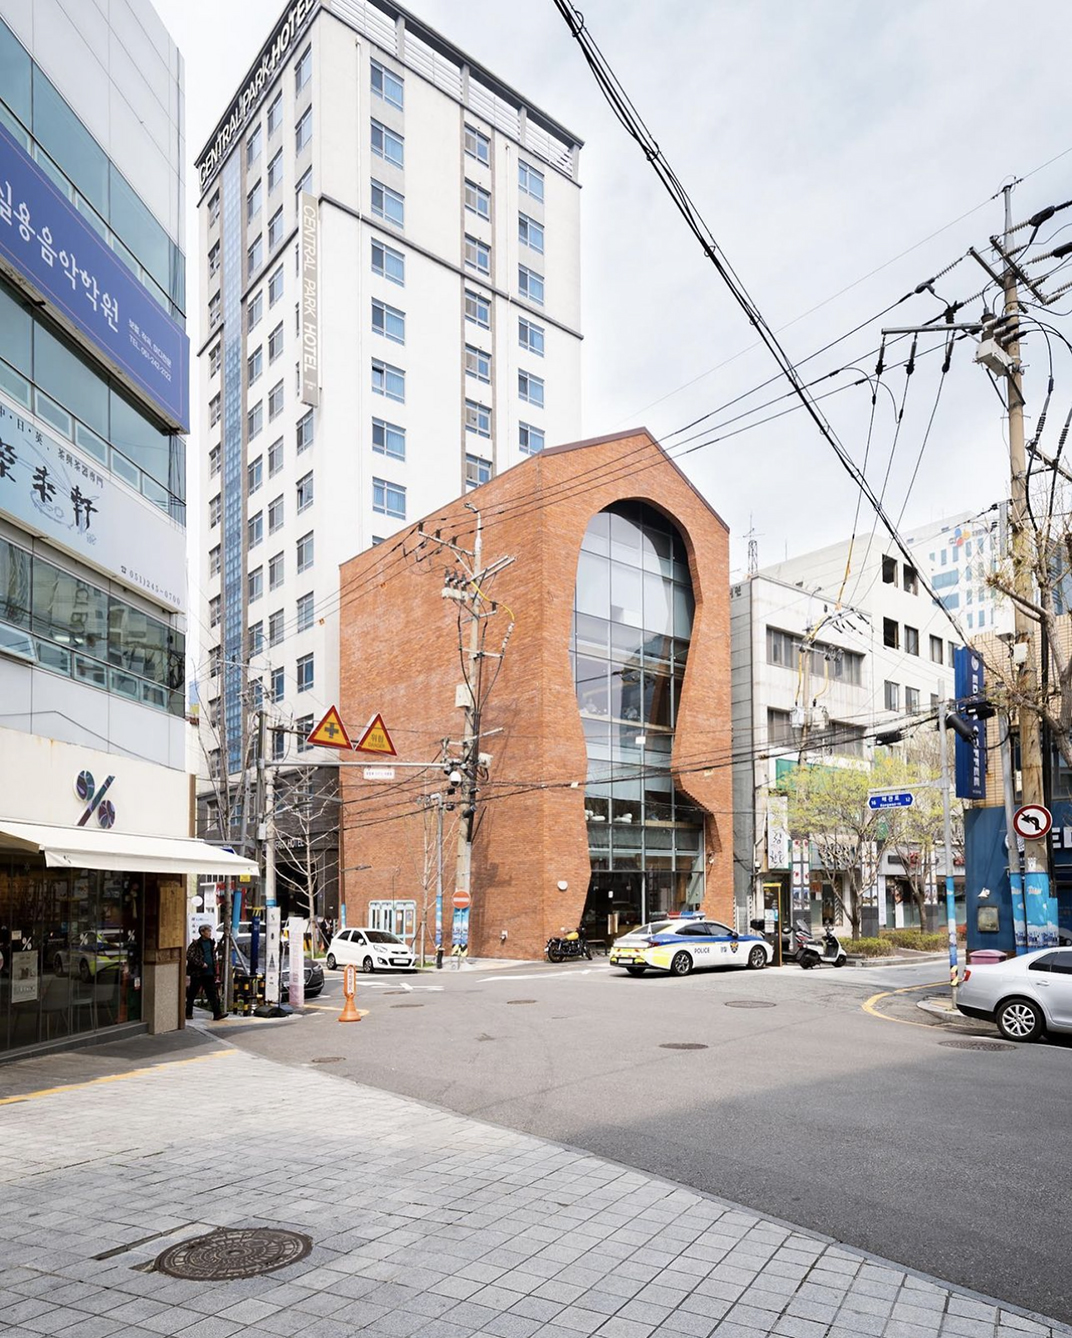 3层楼高落地窗的绝美韩屋咖啡厅 韩国 深圳 上海 北京 广州 武汉 咖啡店 餐饮商业 logo设计 vi设计 空间设计